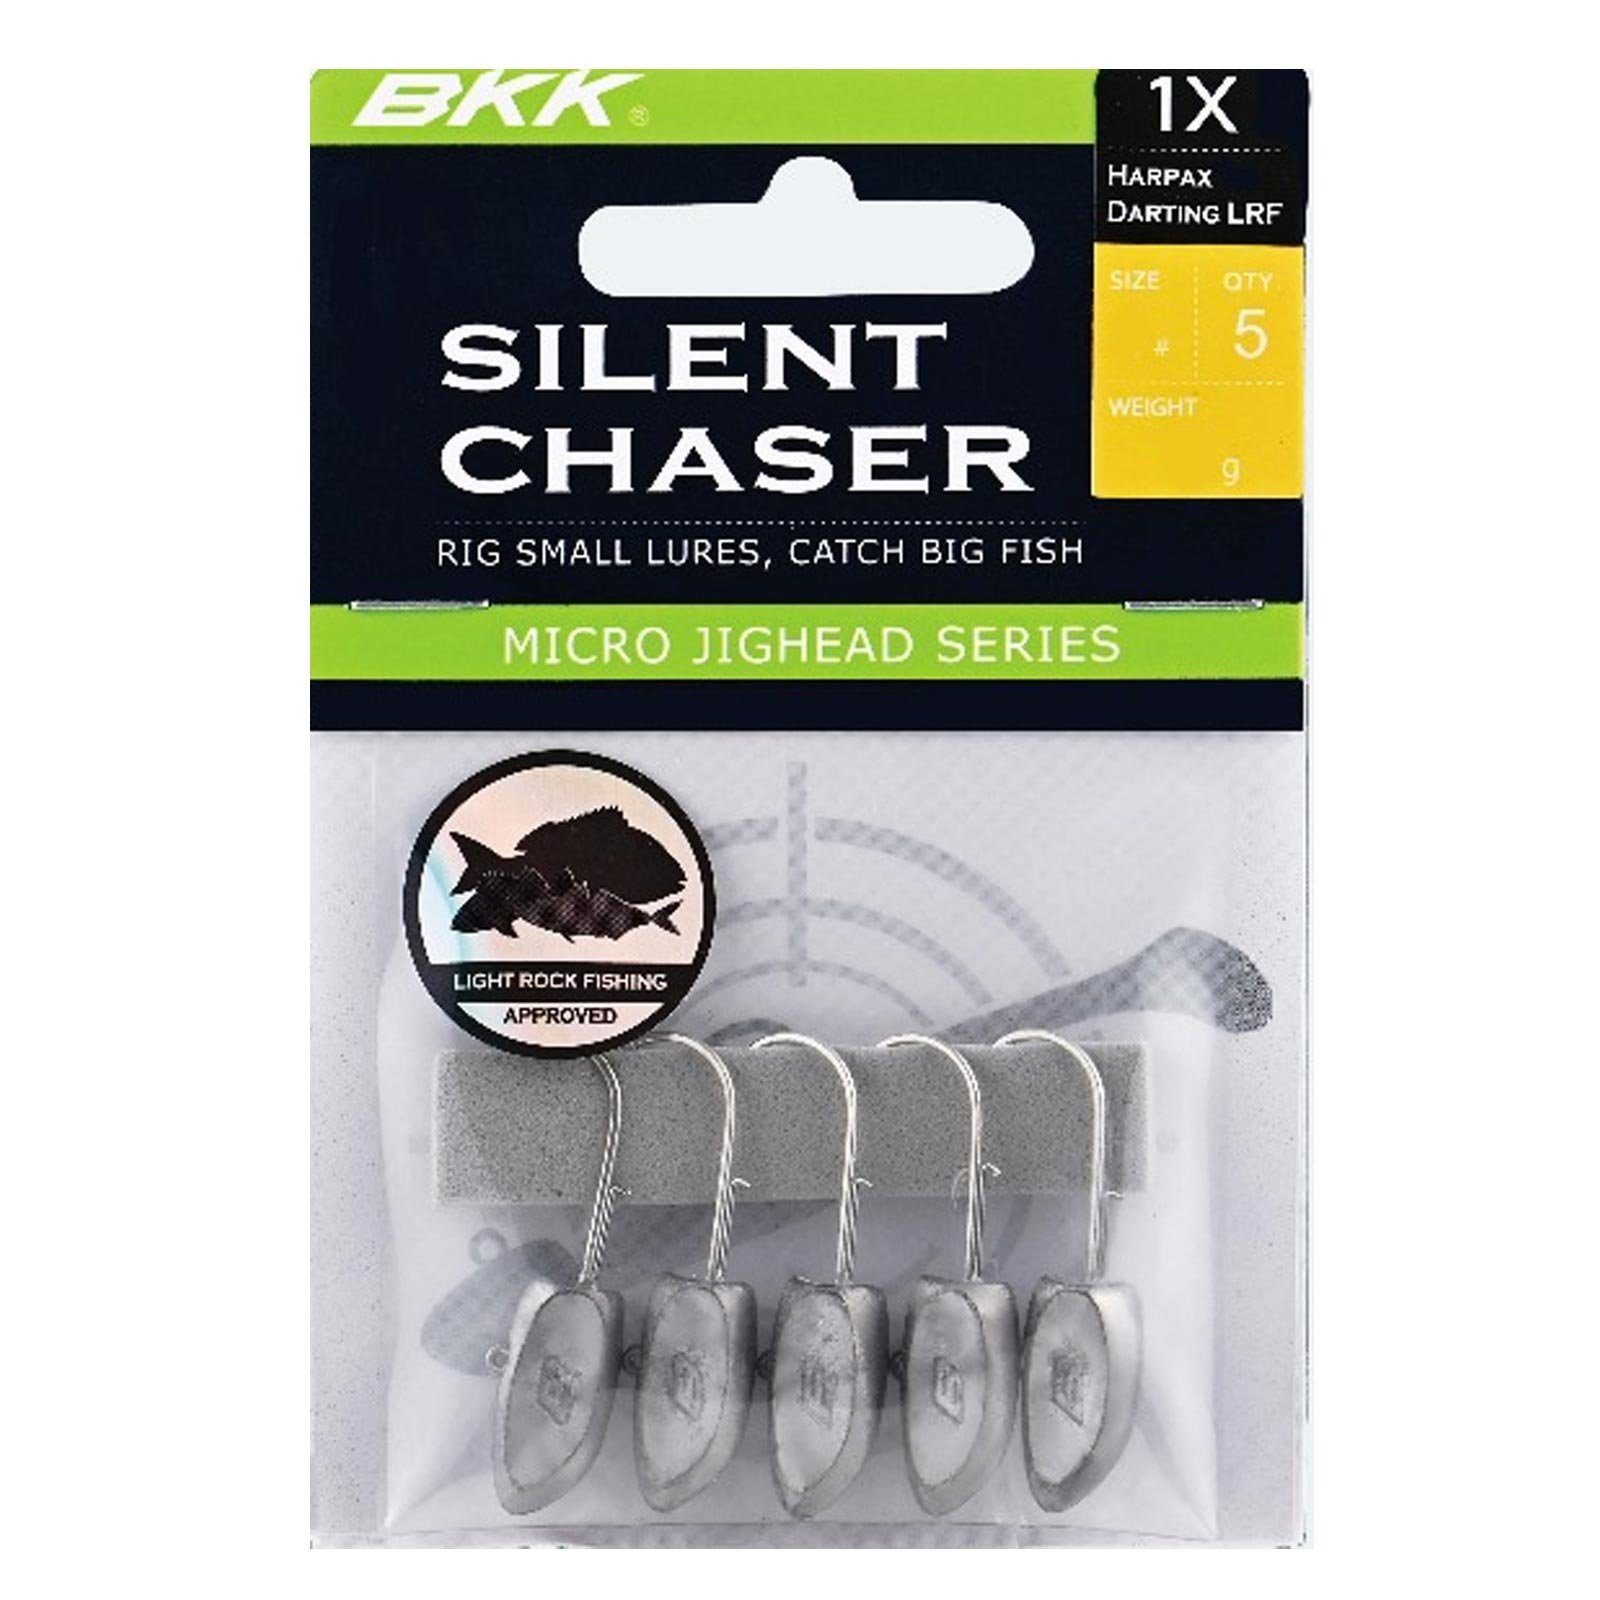 BKK Jighaken, Chaser-Harpax 6# Silent LRF BKK Darting Jigkopf 1,8g